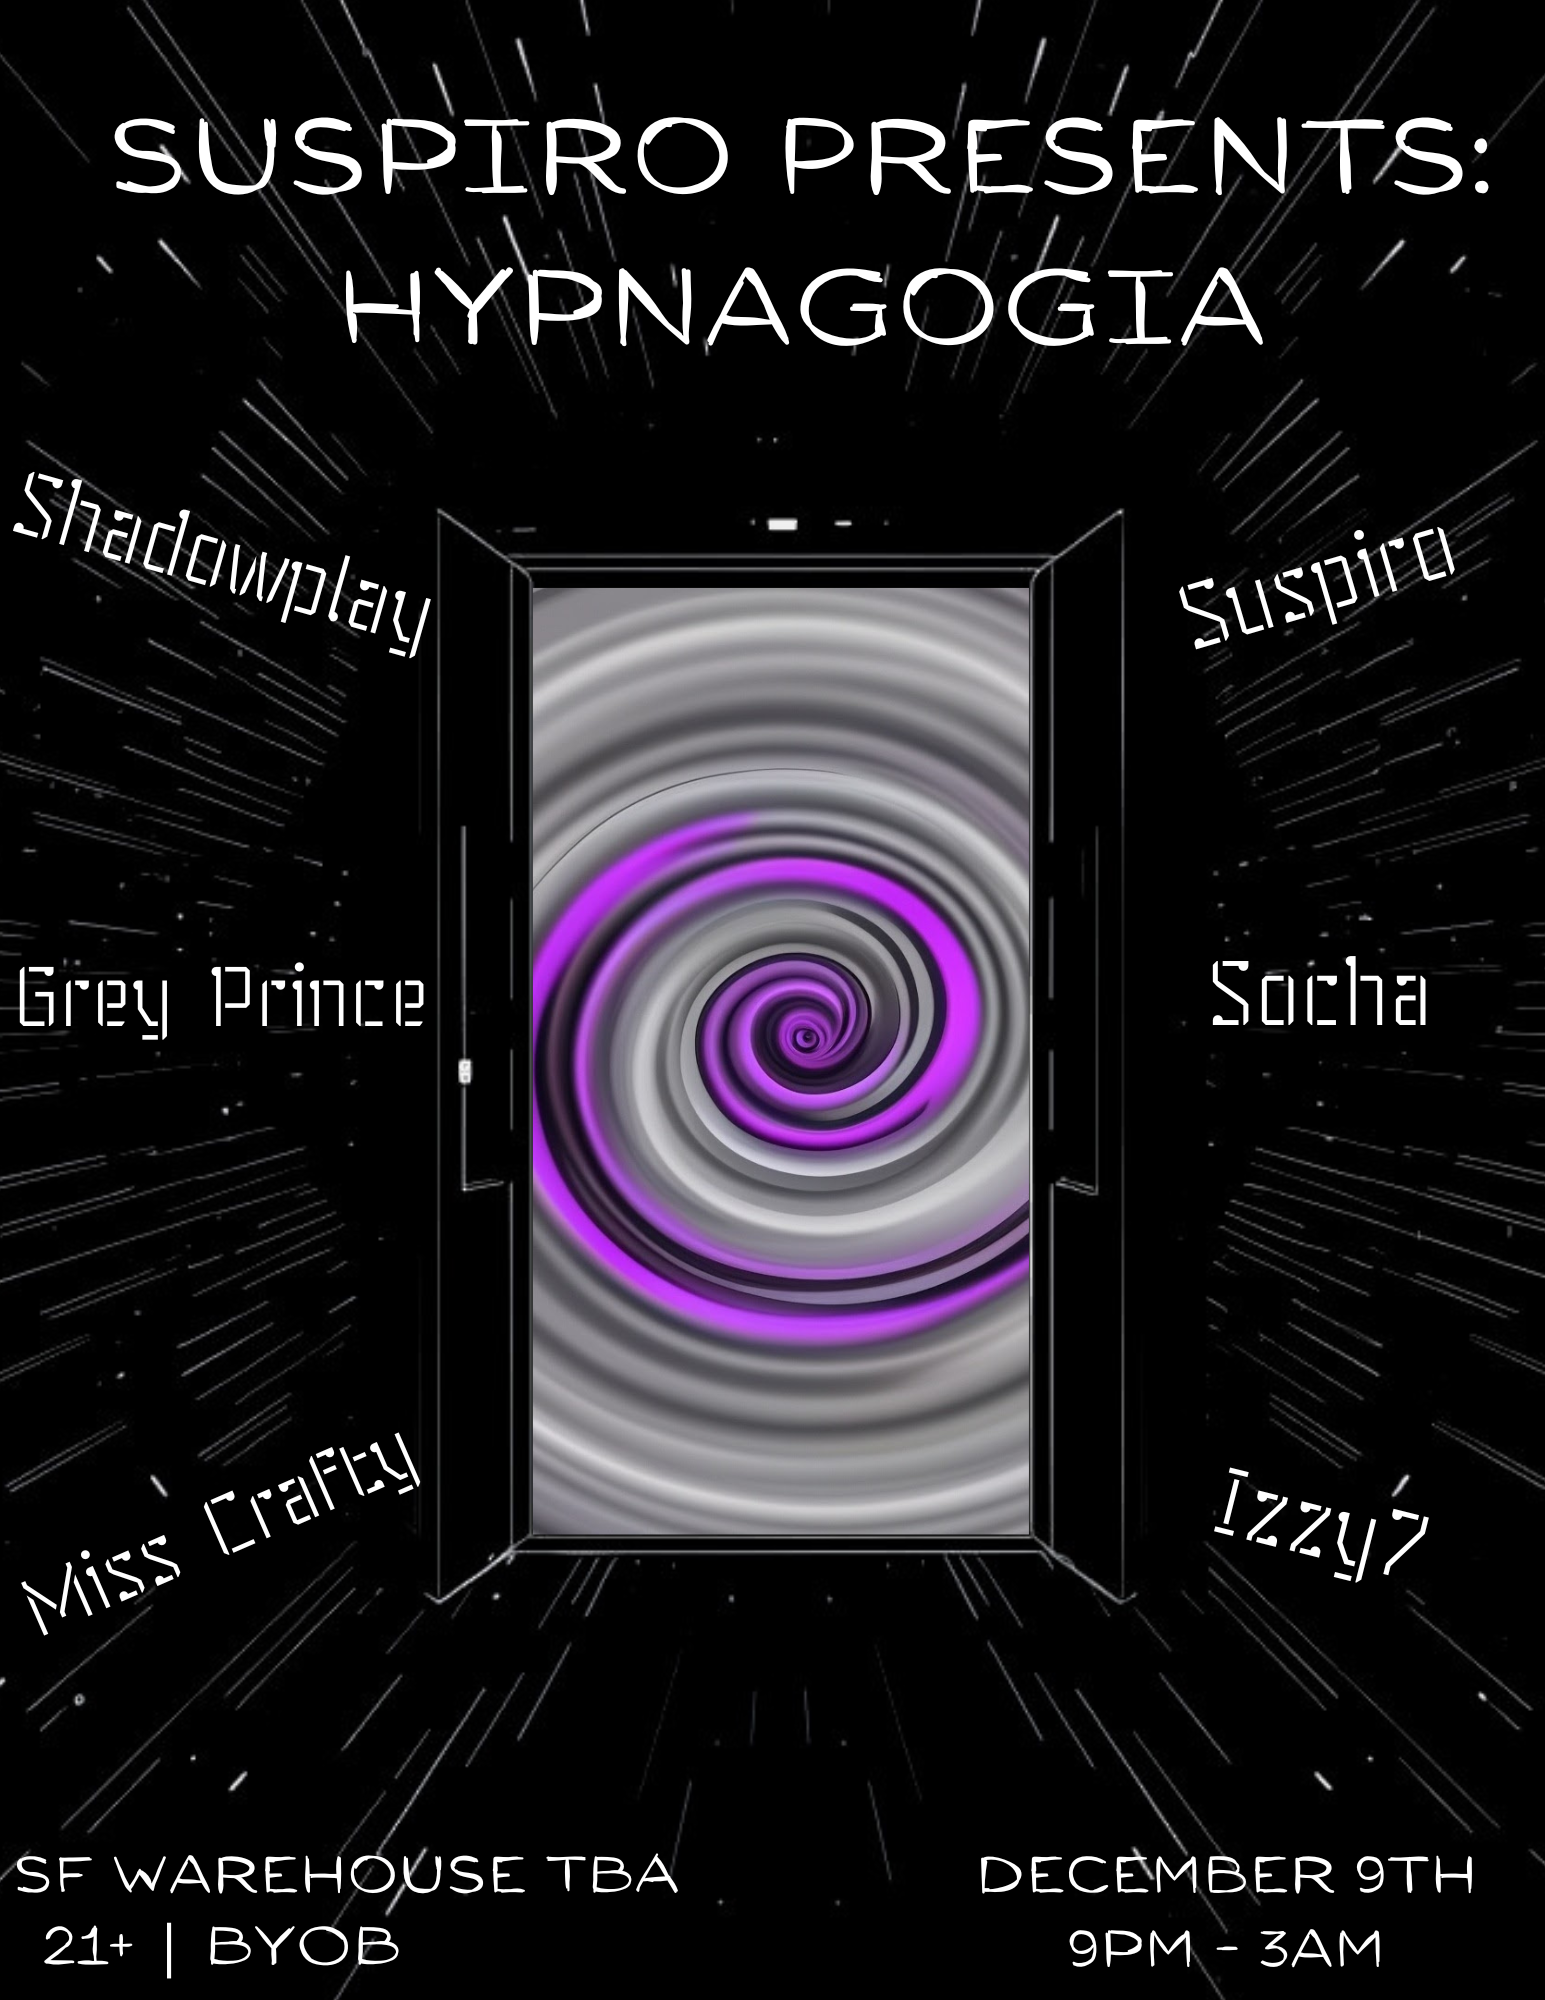 Suspiro presents: Hypnagogia - Página frontal